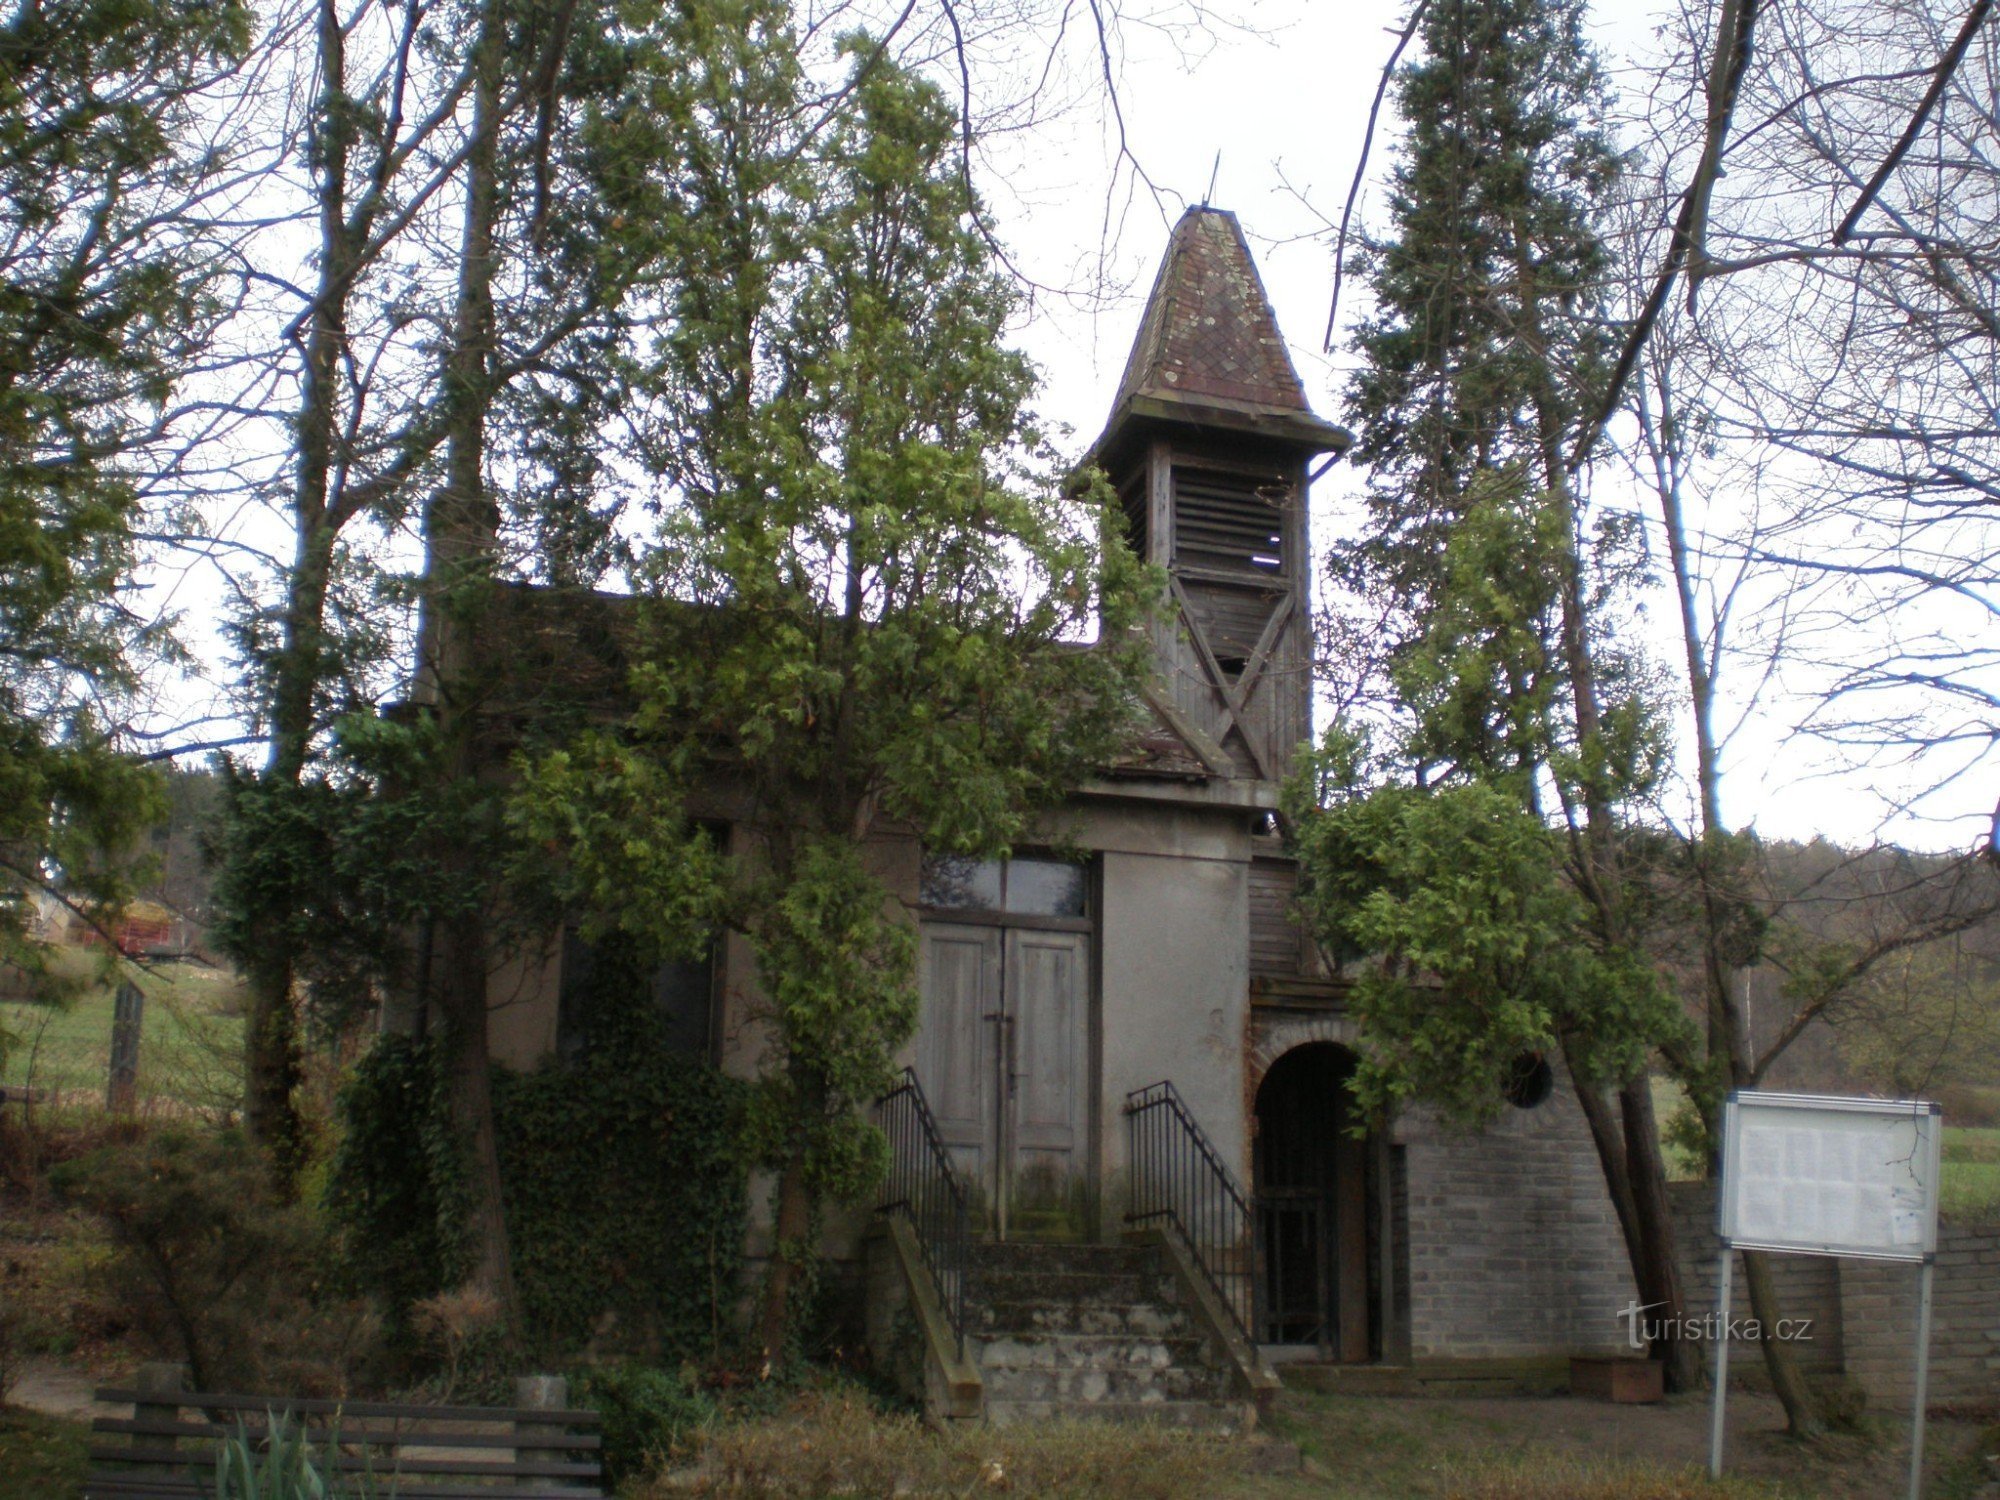 Nhà nguyện nghĩa trang gần Všenor